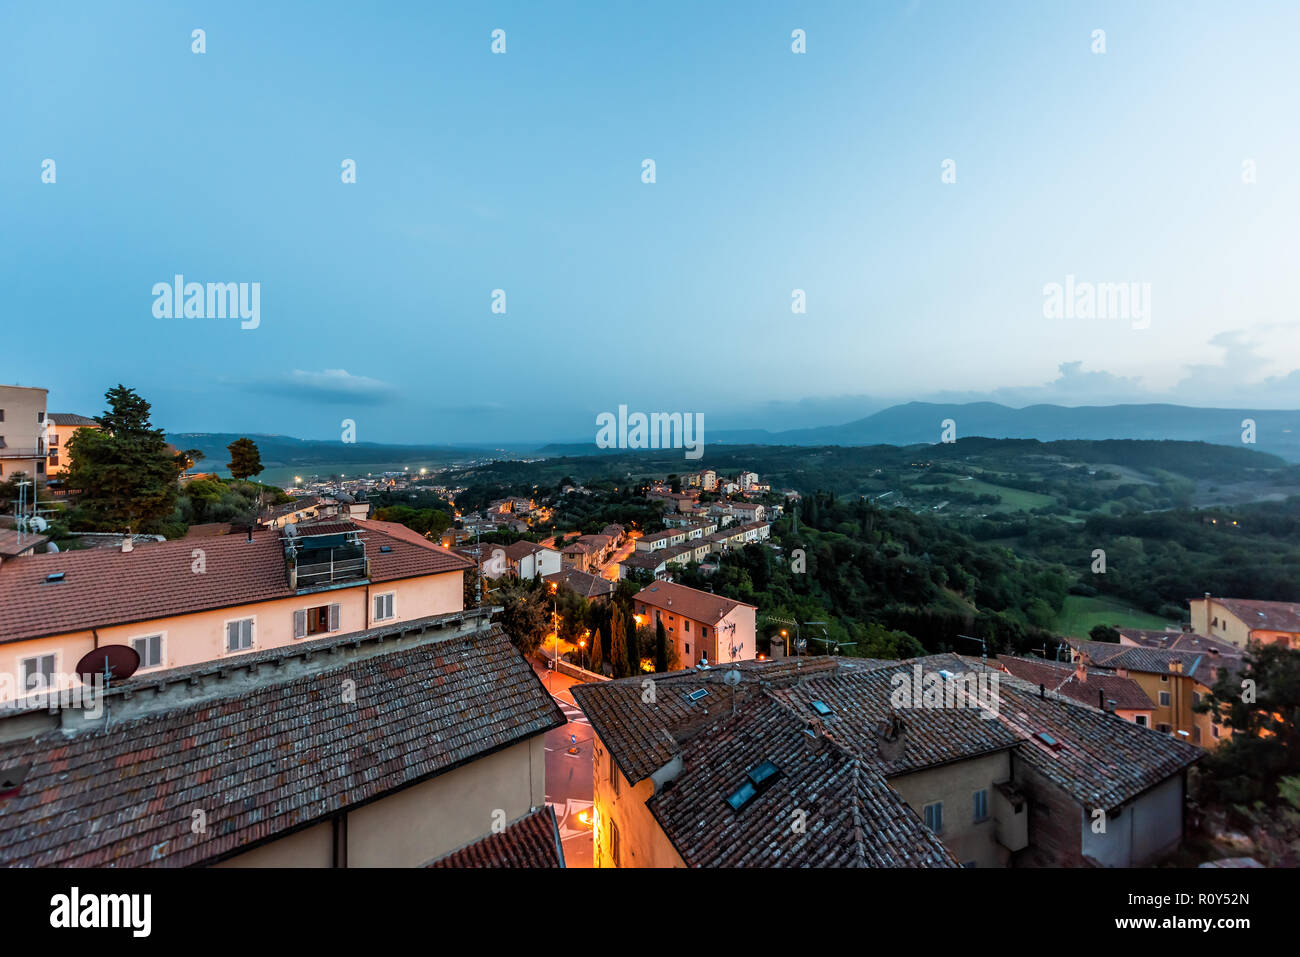 Chiusi Nebel Nebel, Nacht, Abend oder Morgen in Umbrien, Italien in der Nähe der Toskana, mit leuchtenden Lampen auf Straßen, Häuser auf der Dachterrasse Berg Land, r Stockfoto